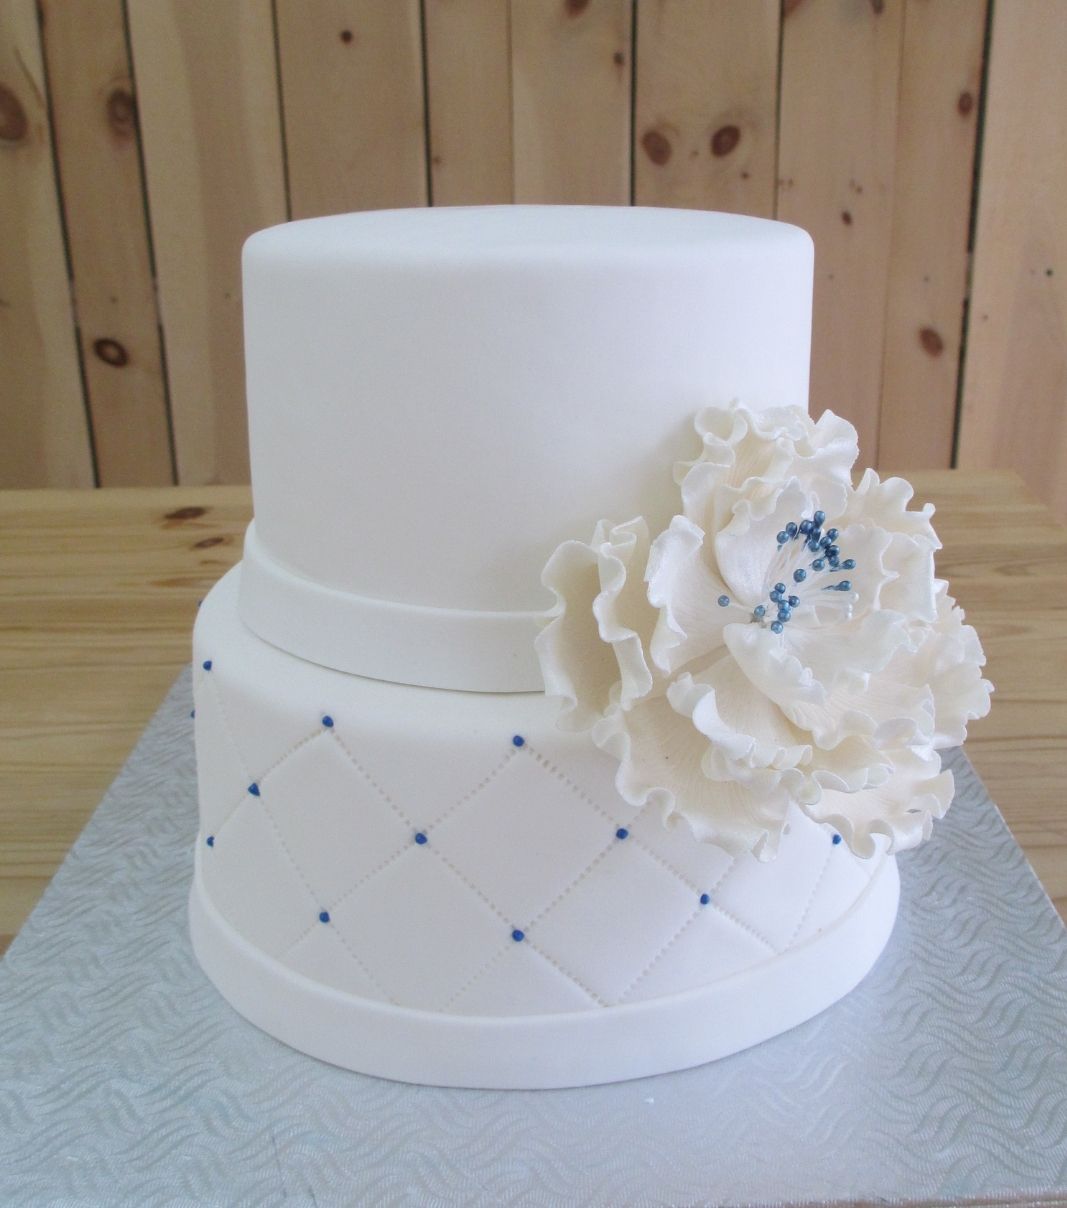 Gâteau d'anniversaire sur mesure: gâteau de 2 étages avec une couverture en fondant à effet matelassé (quilting) avec des points bleus et décoré d'une grosse fleur en sucre agrémentée de détails bleus.